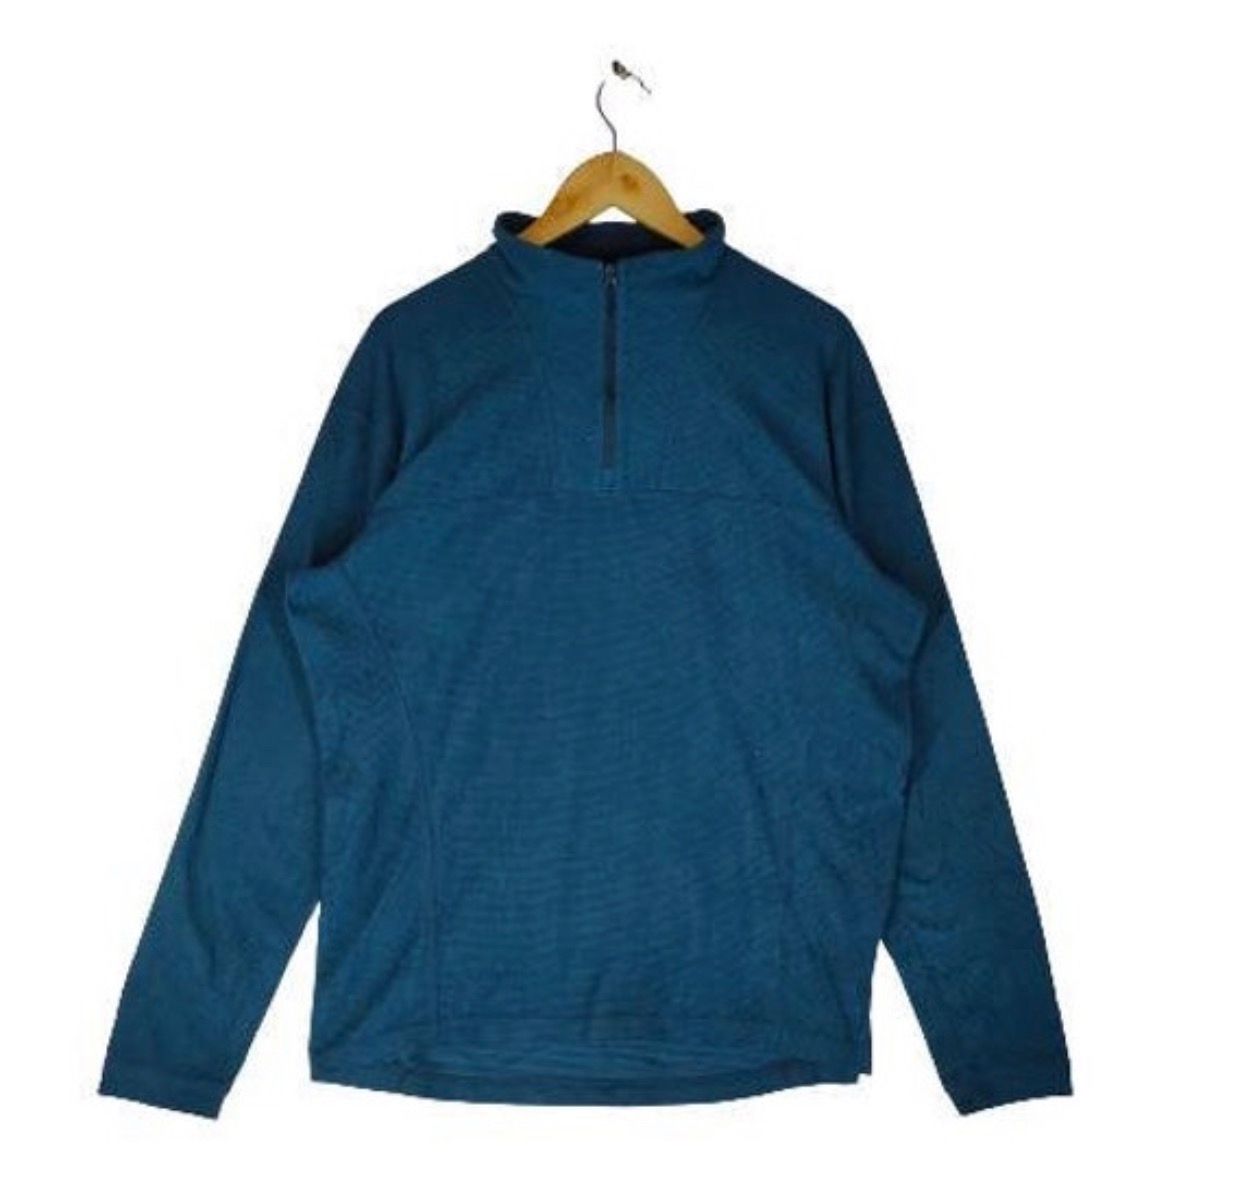 Vintage ARC’TERYX CANADA POLARTEC Lightweight Sweater - 1